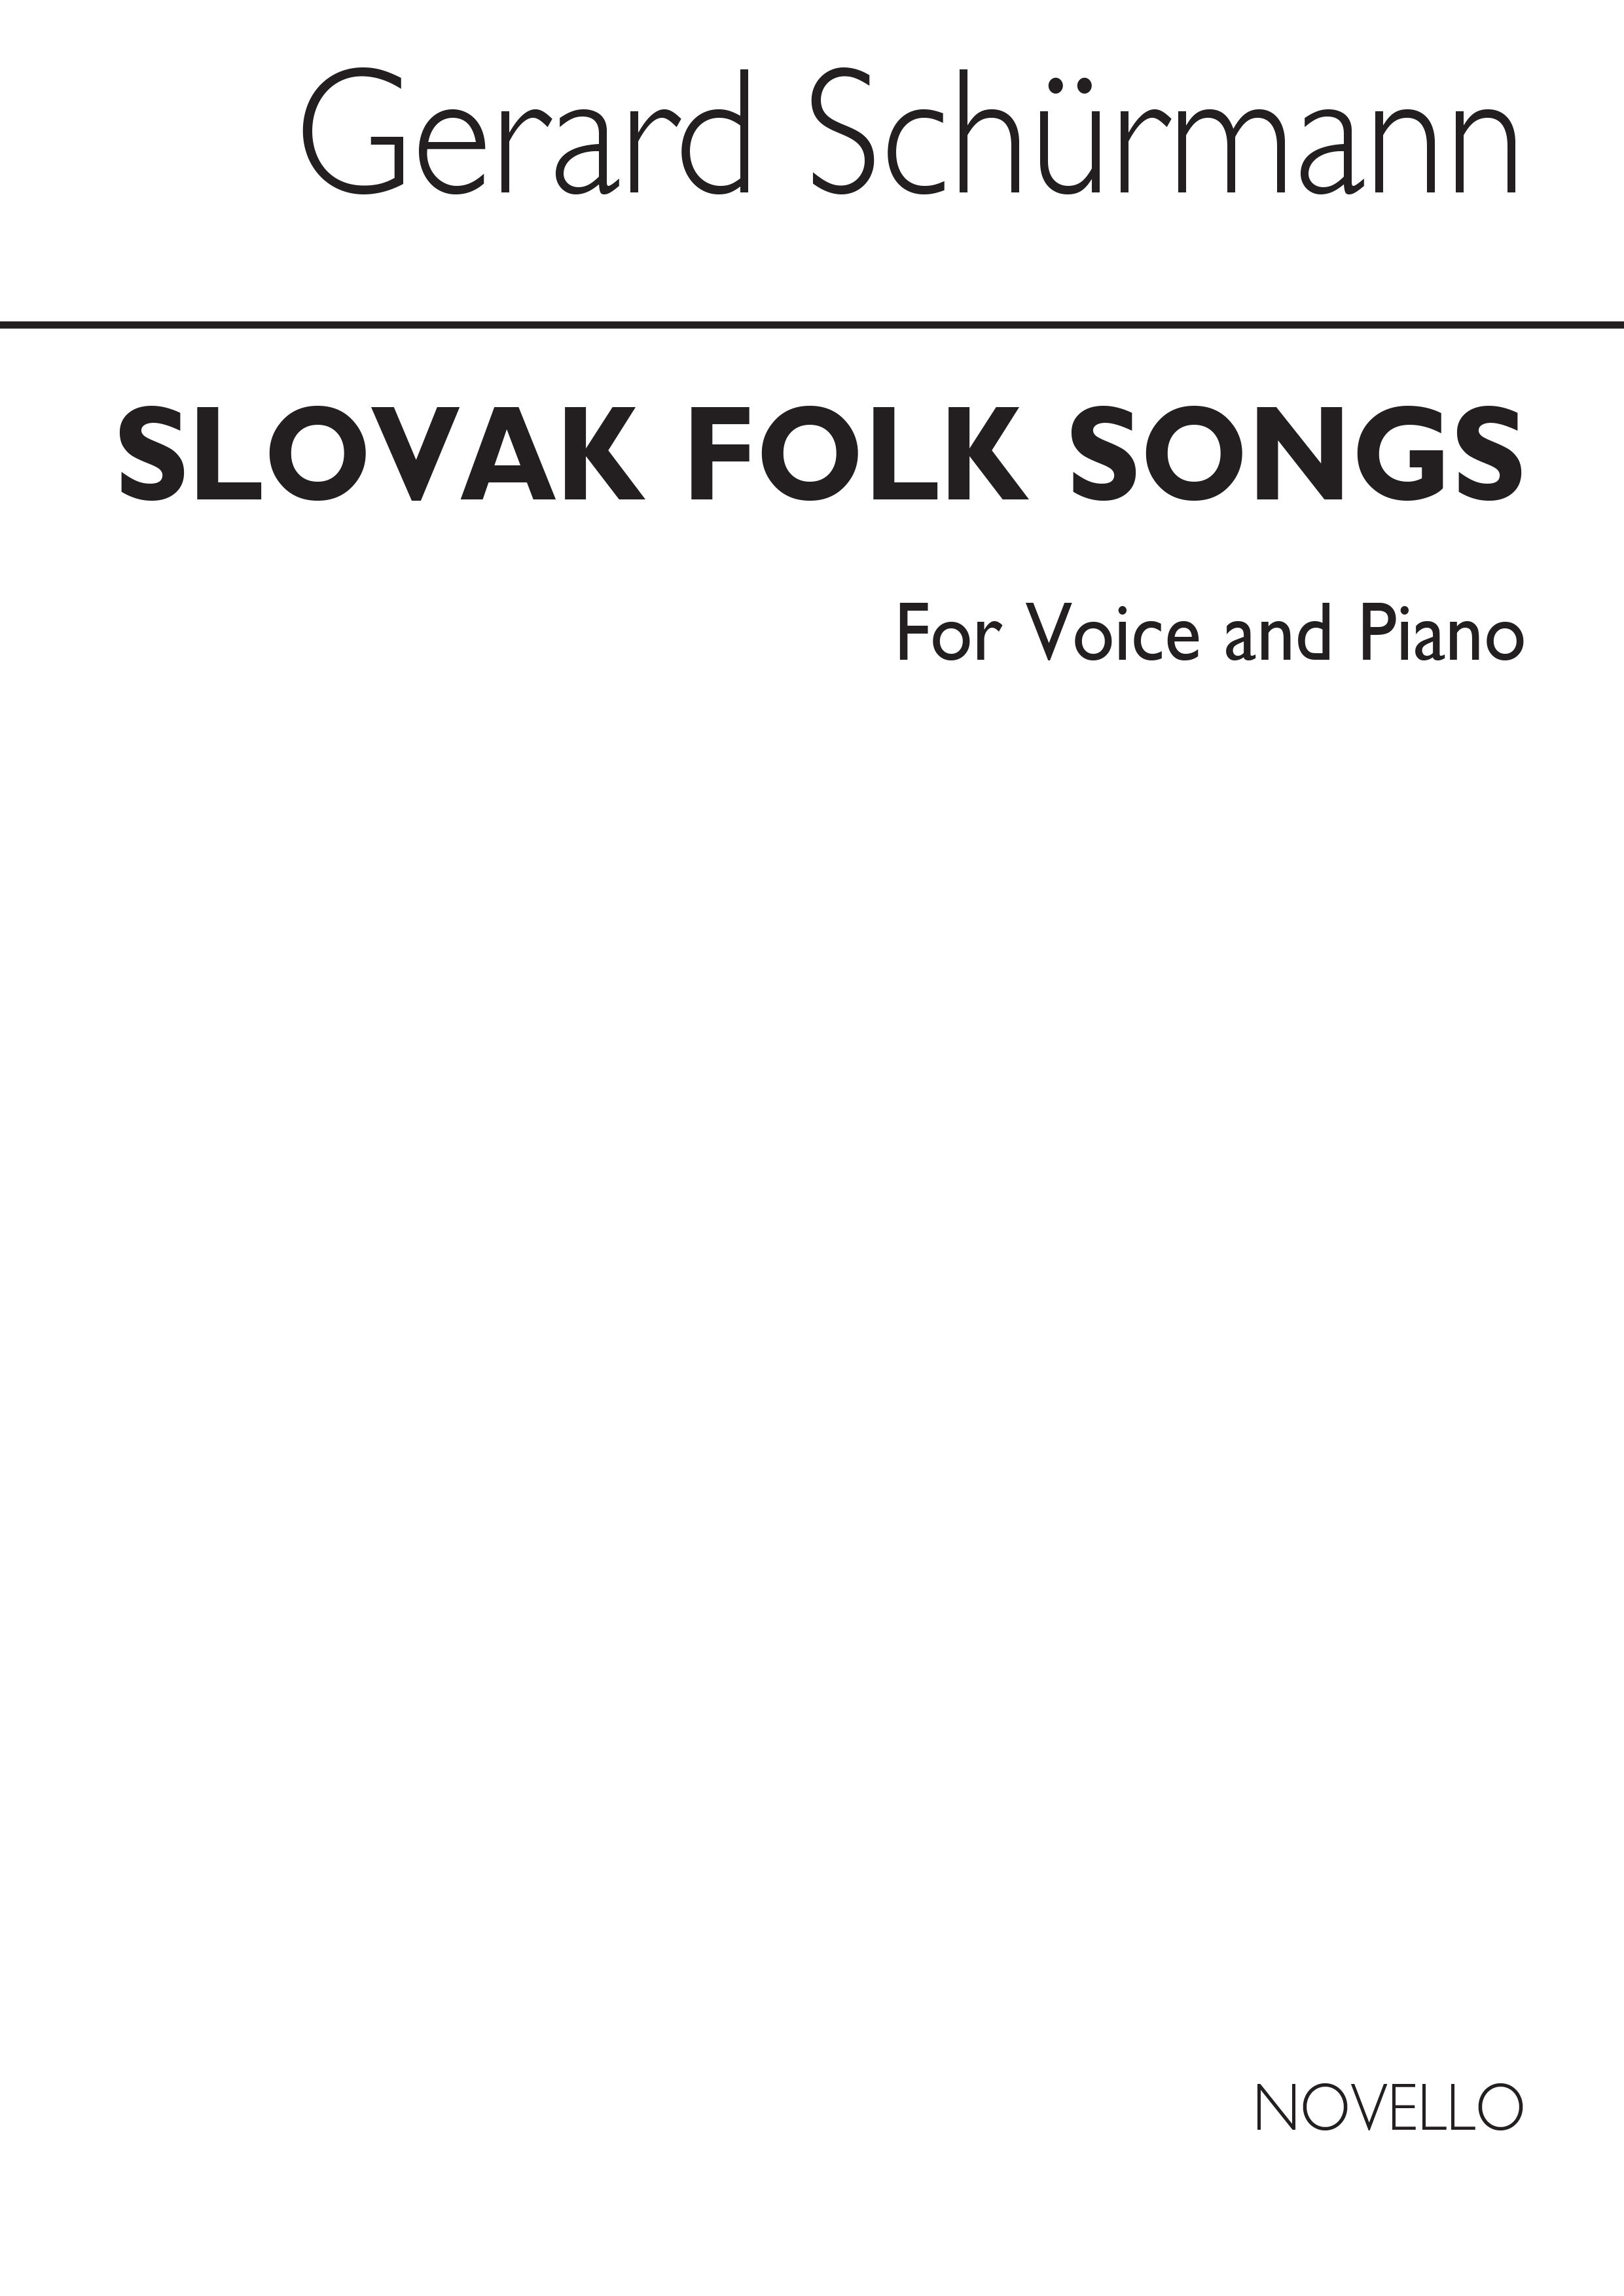 Schurmann: Slovak Folk Songs for Voice and Piano